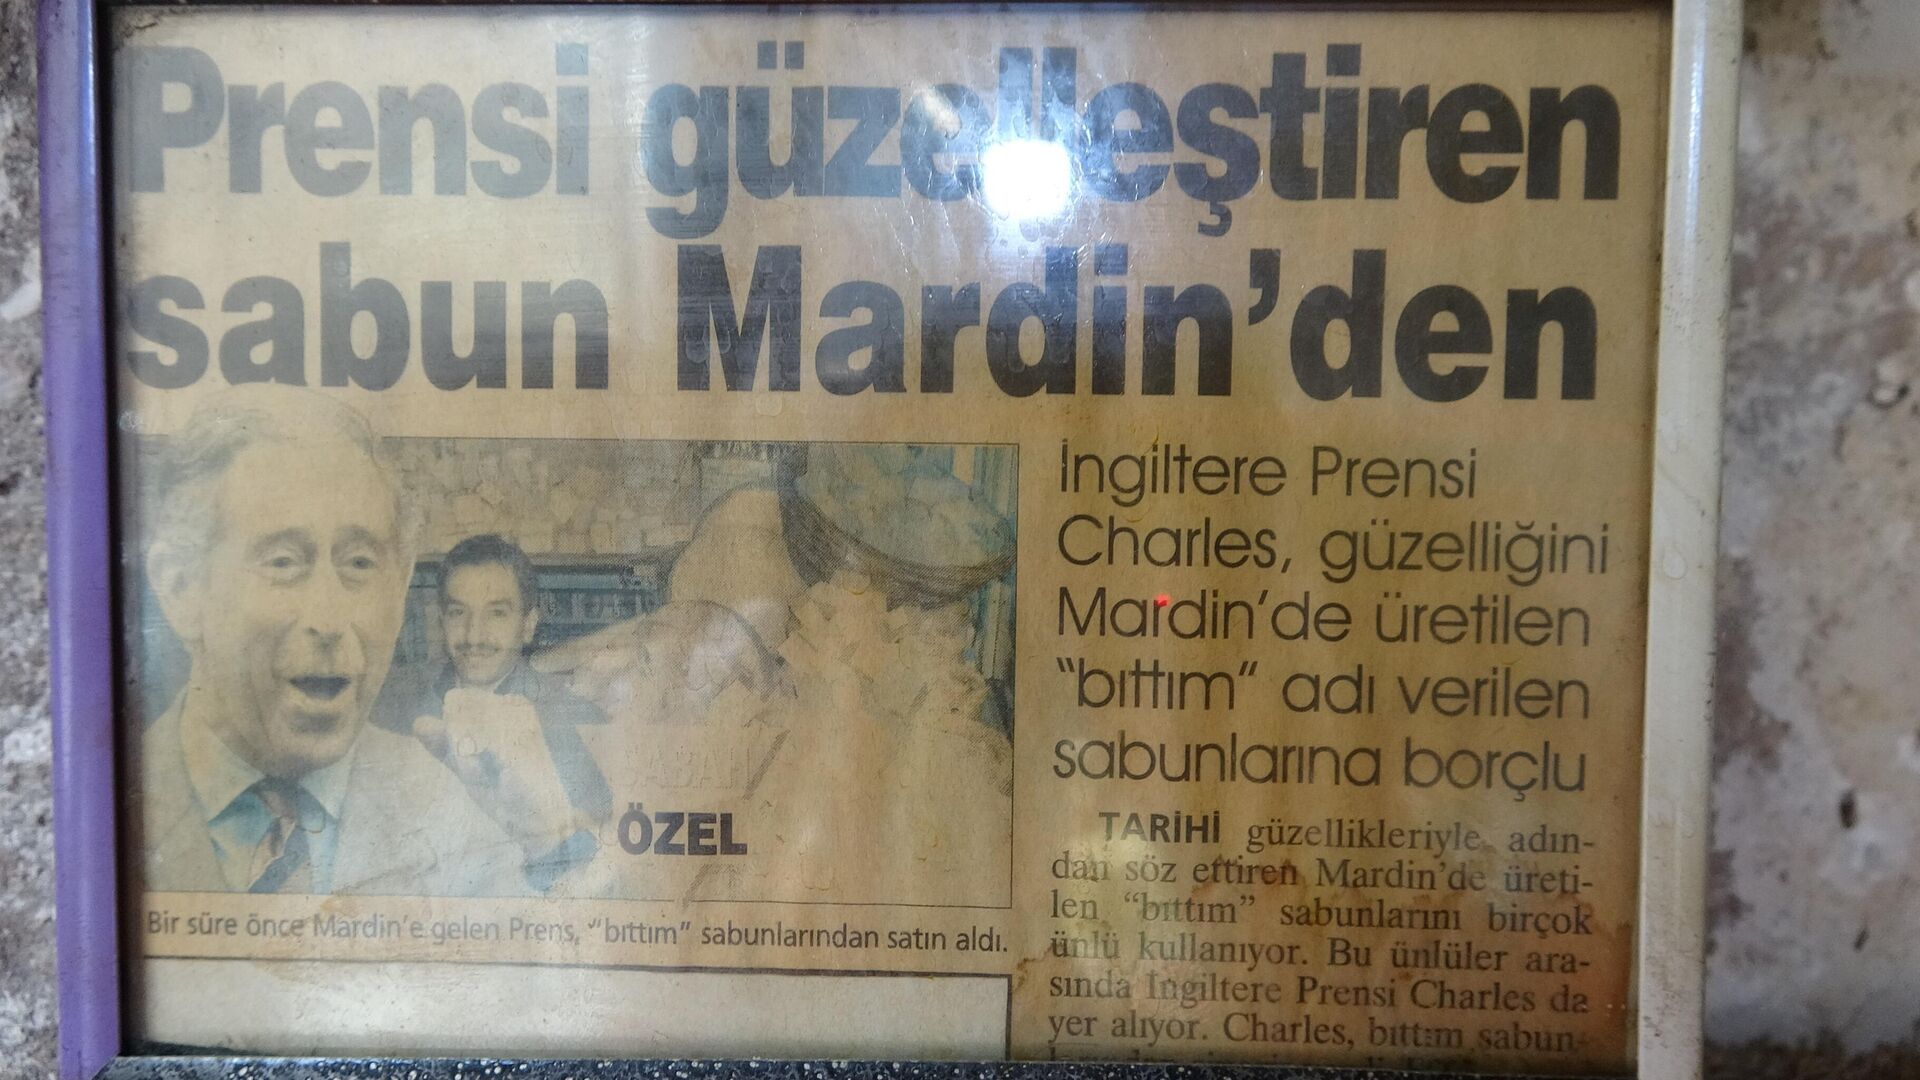 Mardin'in Artuklu ilçesinde 4 kuşaktır sabunculuk yapan Mehmet Dede, 15 yıl önce Mardin'i ziyaret eden Prens Charles'ın 15 yıldır sürekli 3 çeşit sabunu sipariş ettiğini söyledi. - Sputnik Türkiye, 1920, 13.05.2022